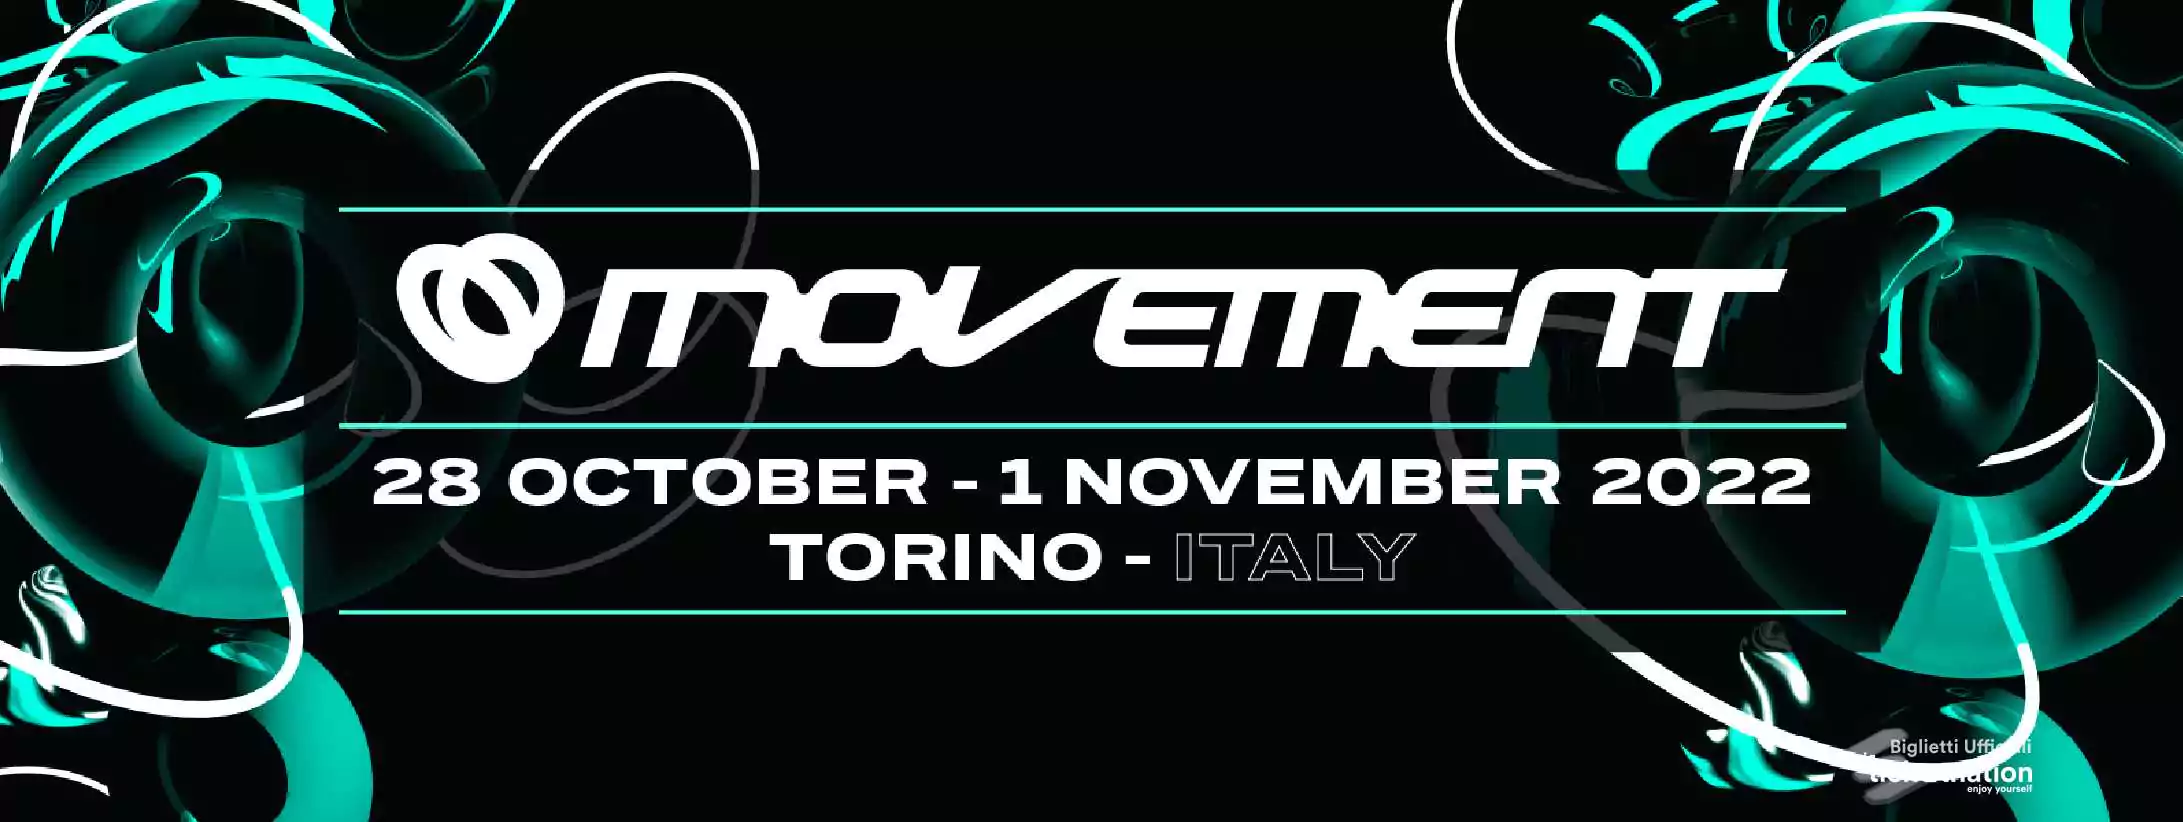 Movement @ Torino 28 ott 2022